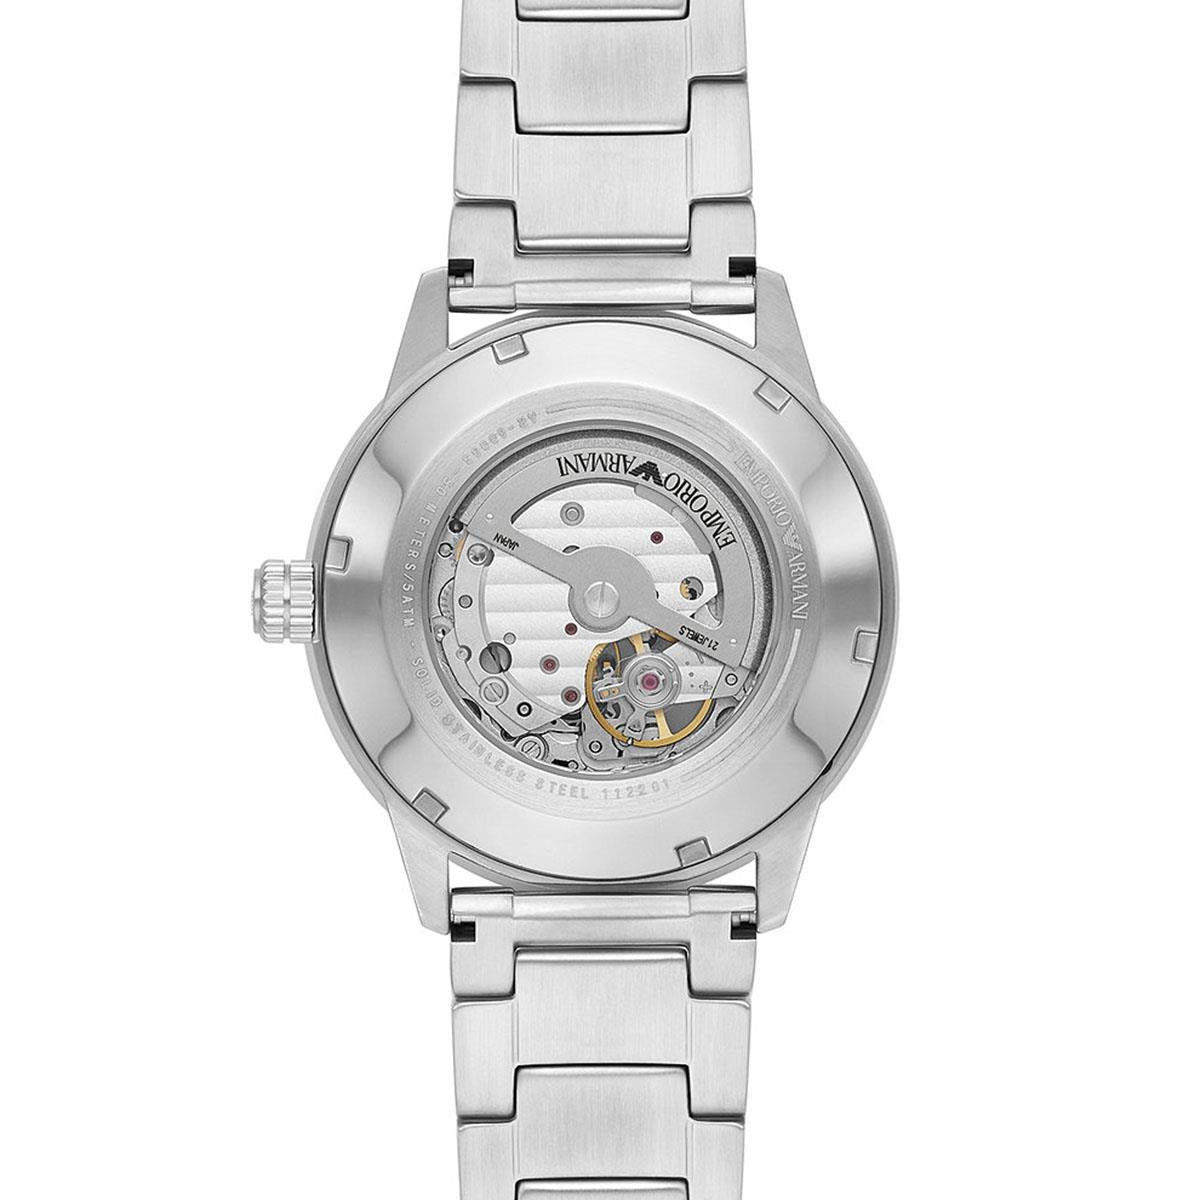 Emporio Armani AR60053 Automatic Men's Watch